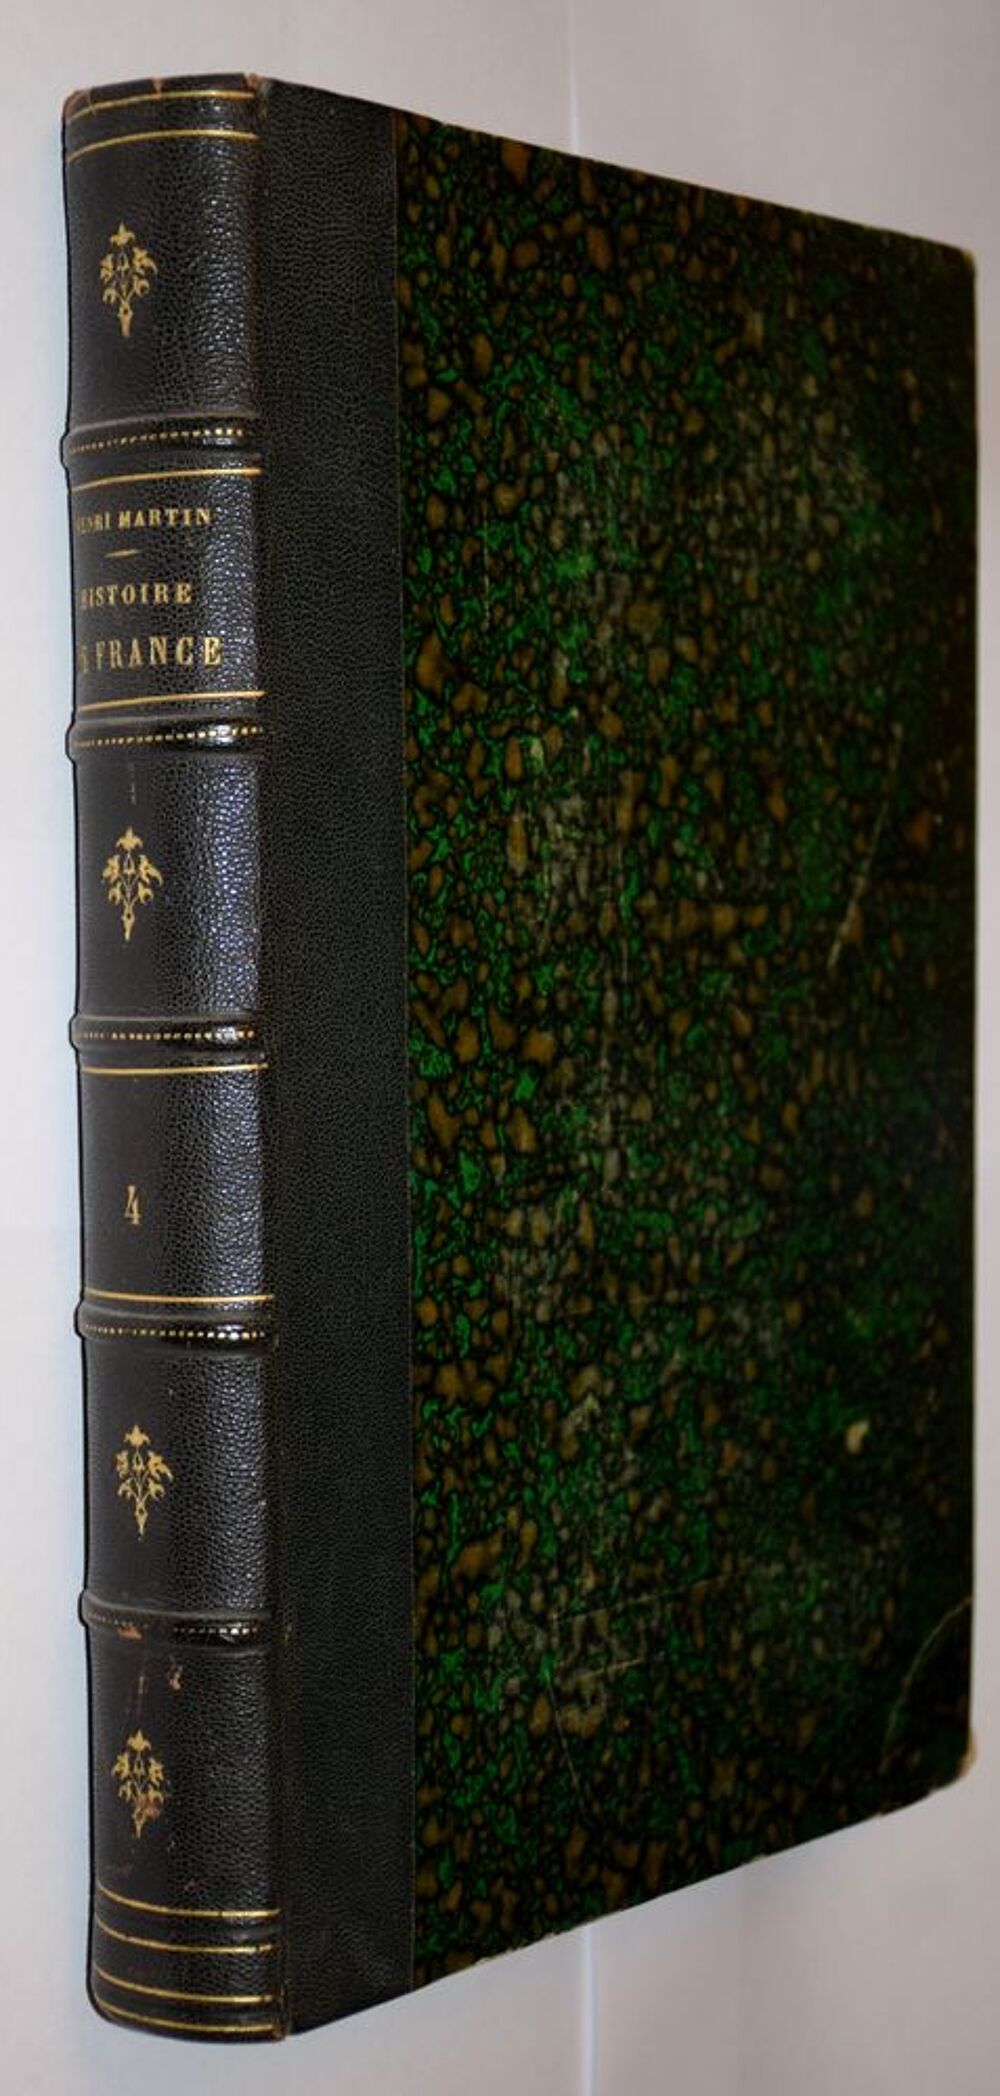 Histoire de France Populaire. Henri Martin - 7 volumes Livres et BD